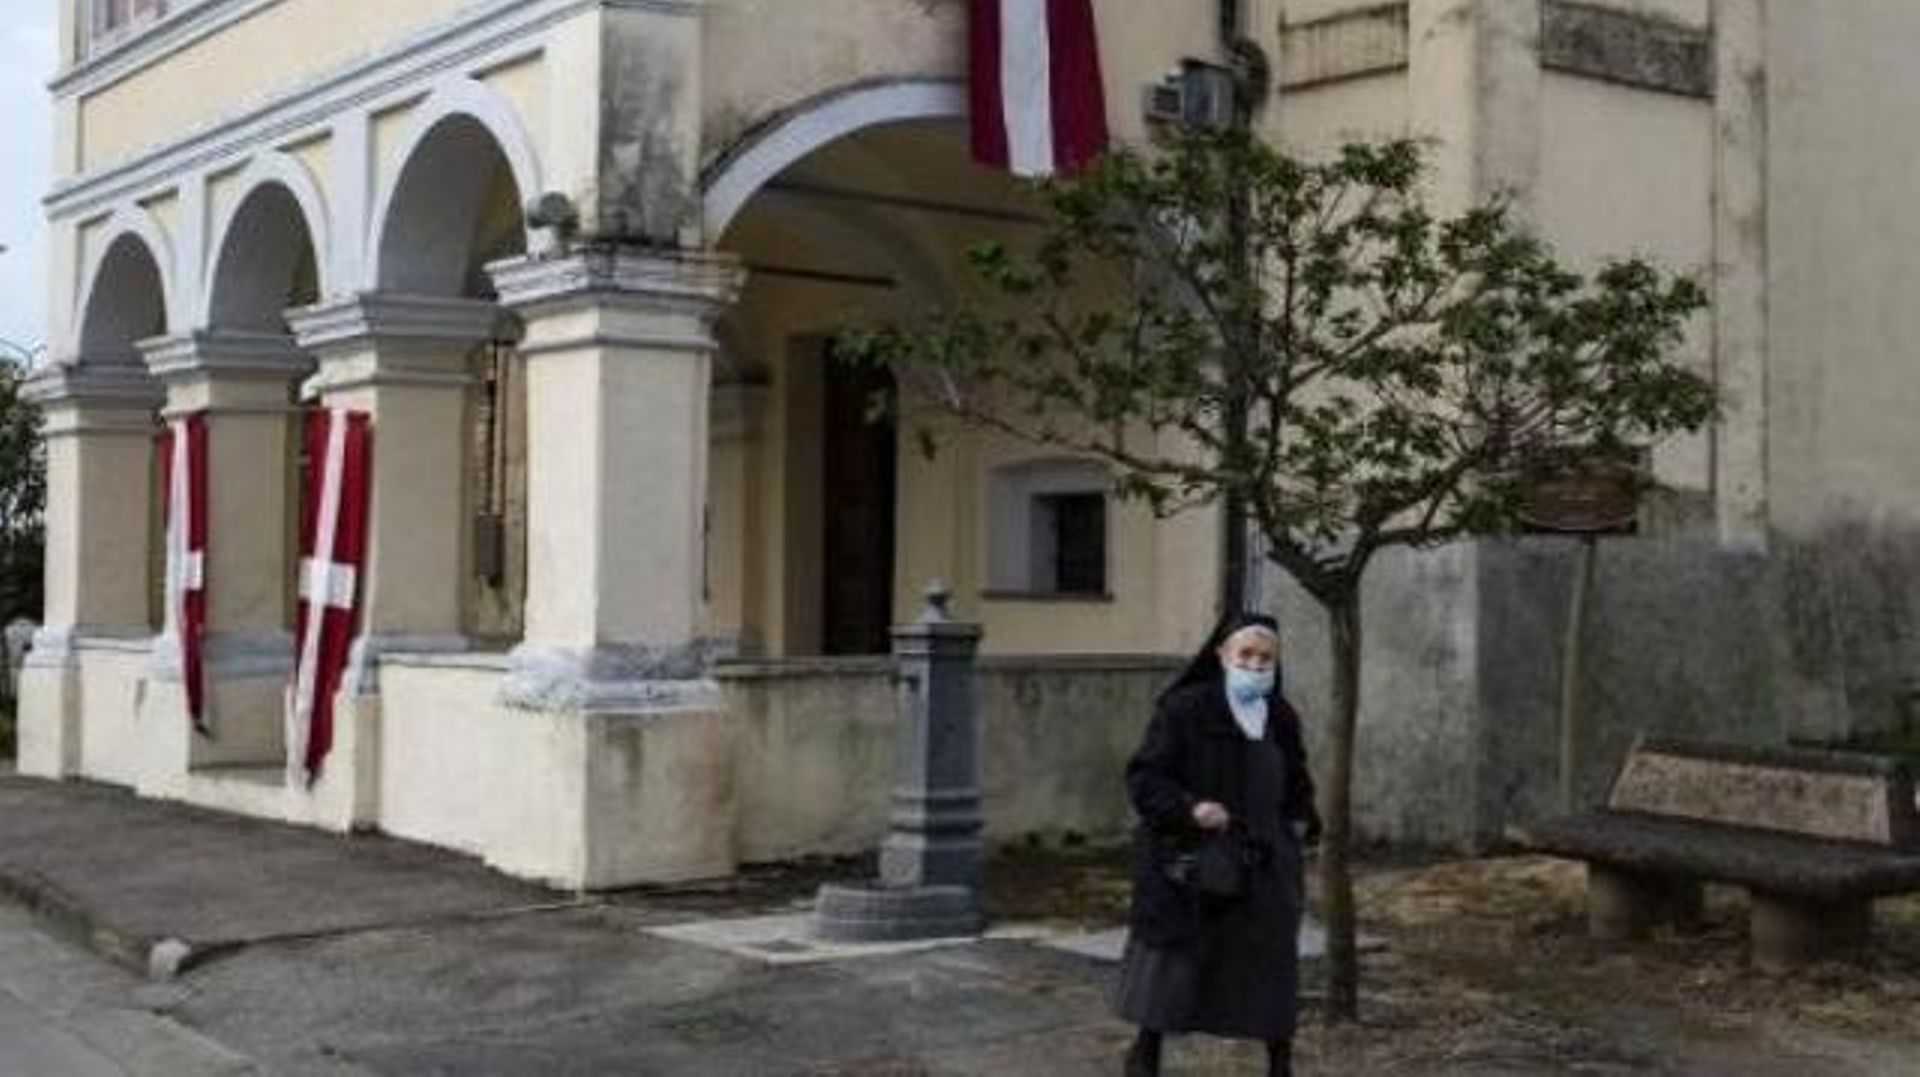 Coronavirus - Pas de messes en Italie: la liberté de culte bafouée, selon les évêques